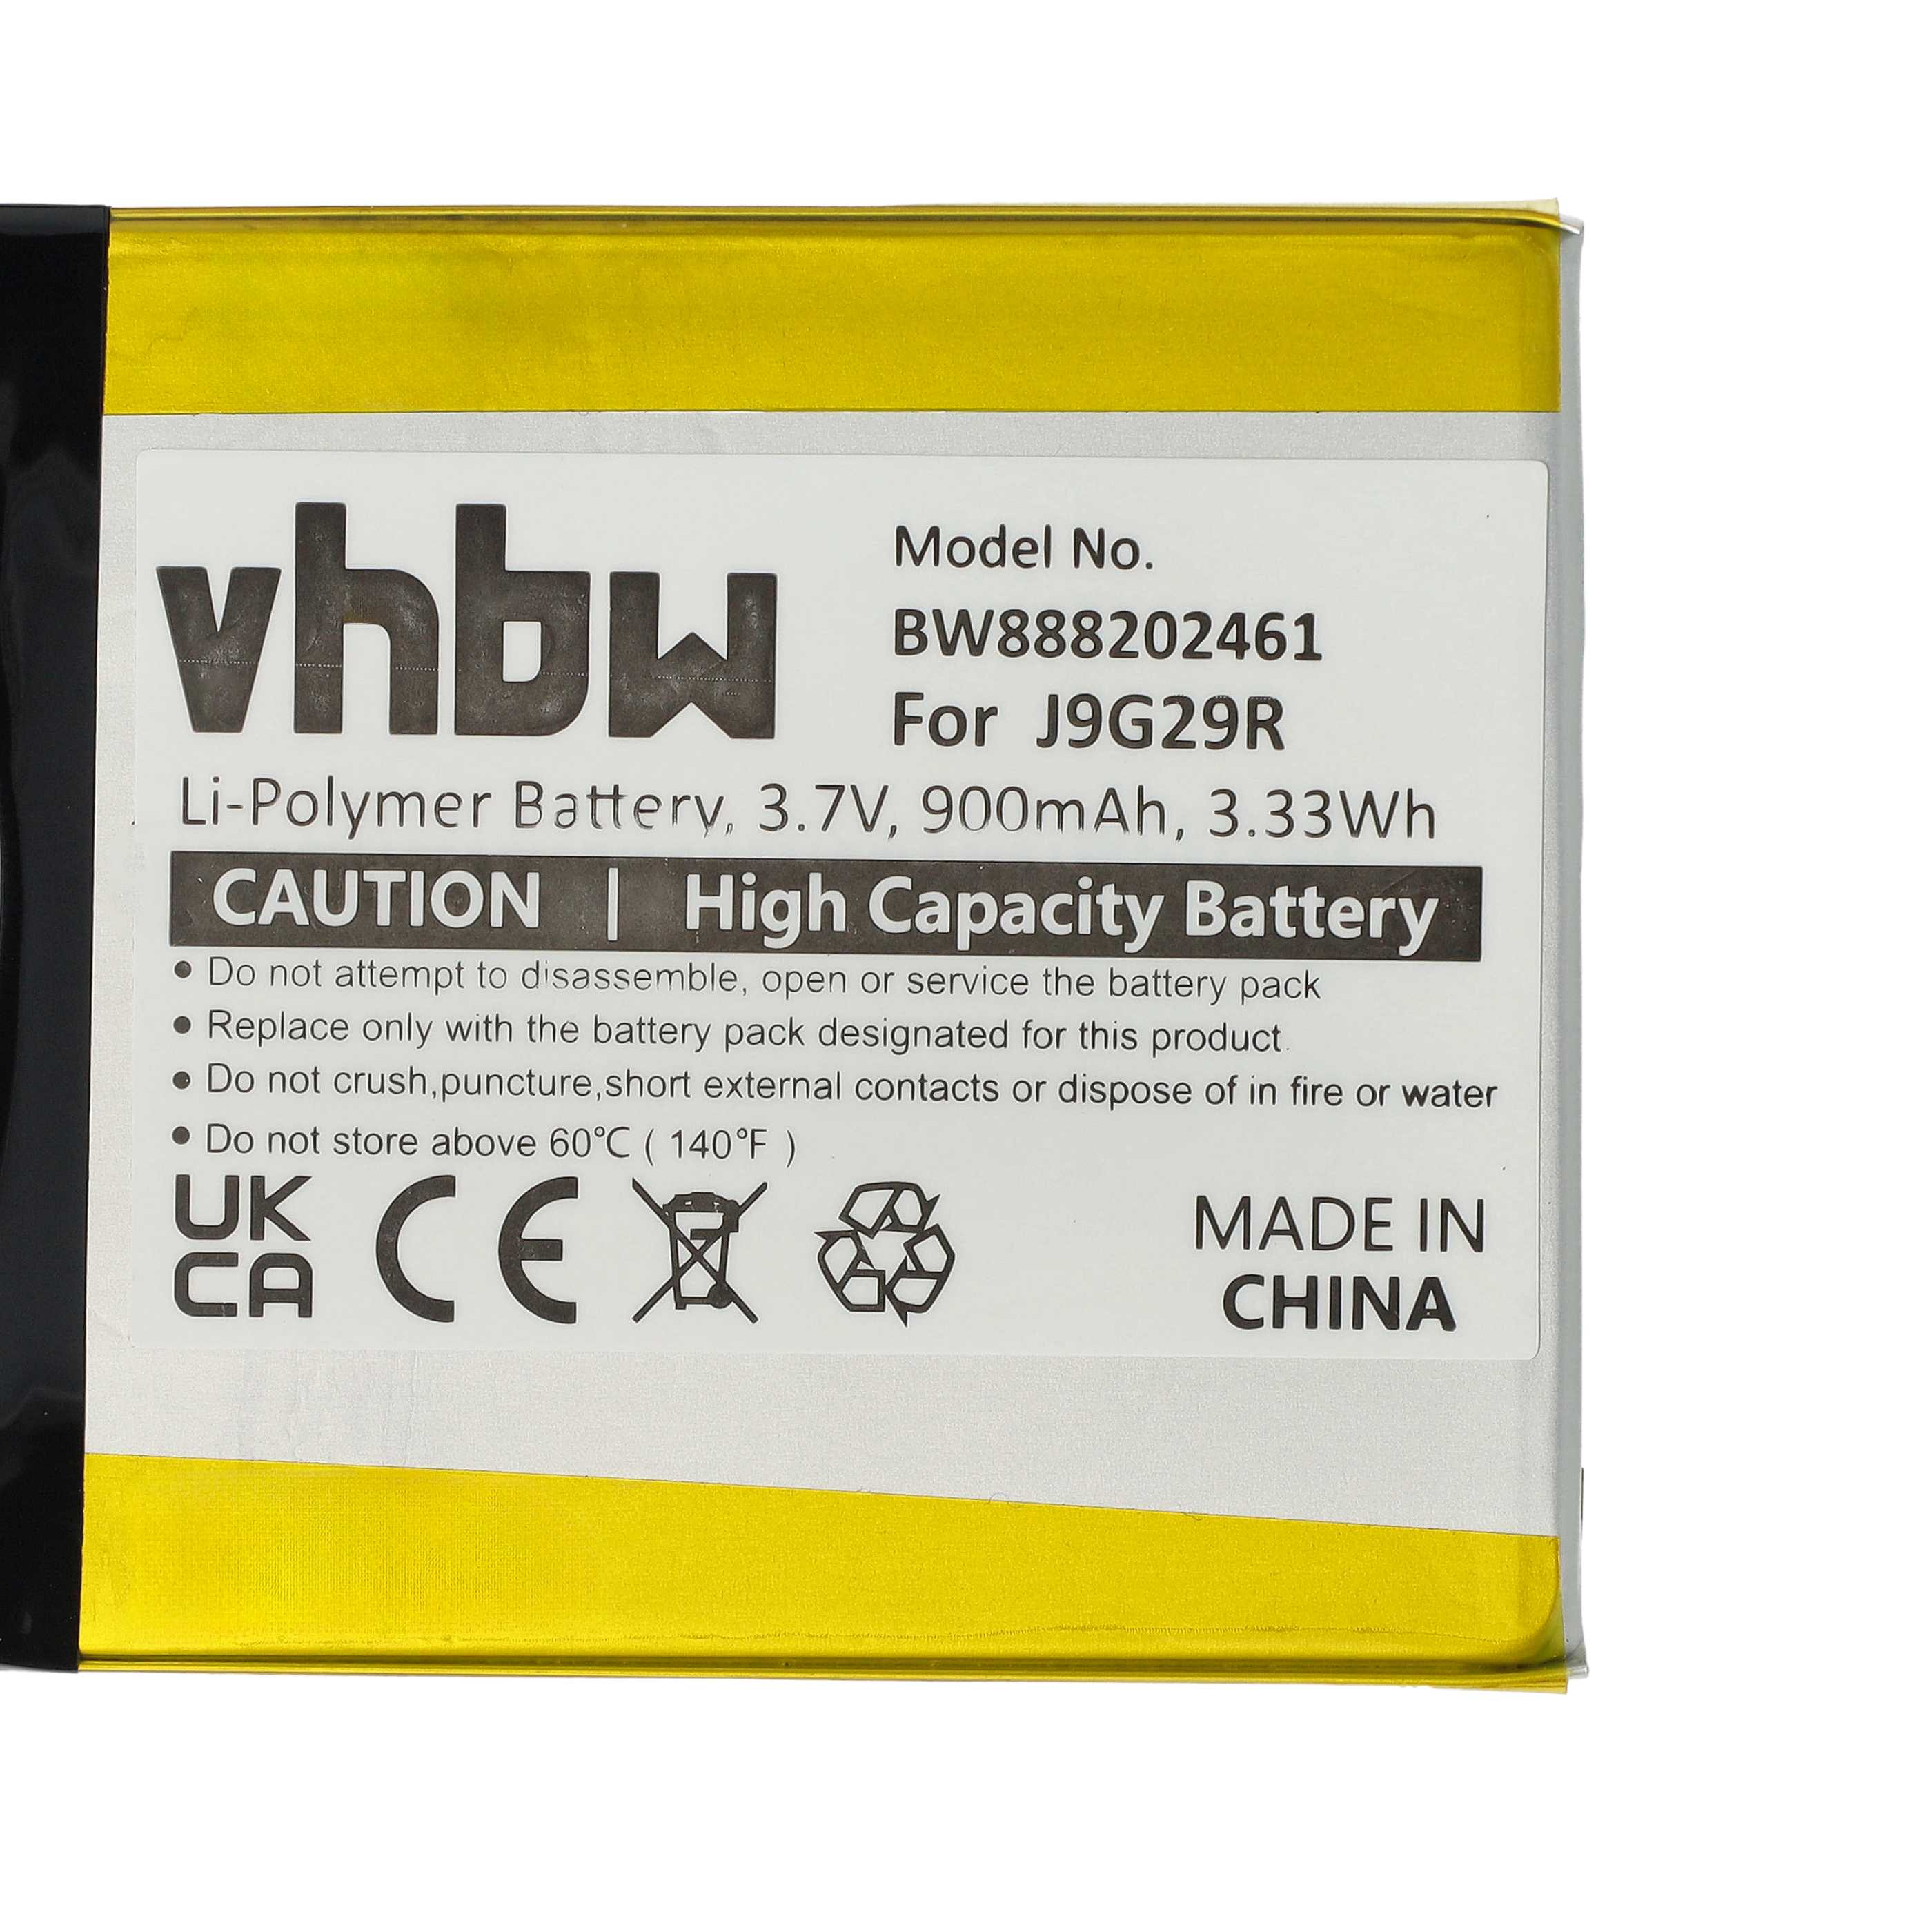 Batterie remplace Amazon 26S1019, 58-000226 pour liseuse ebook - 900mAh 3,7V Li-polymère